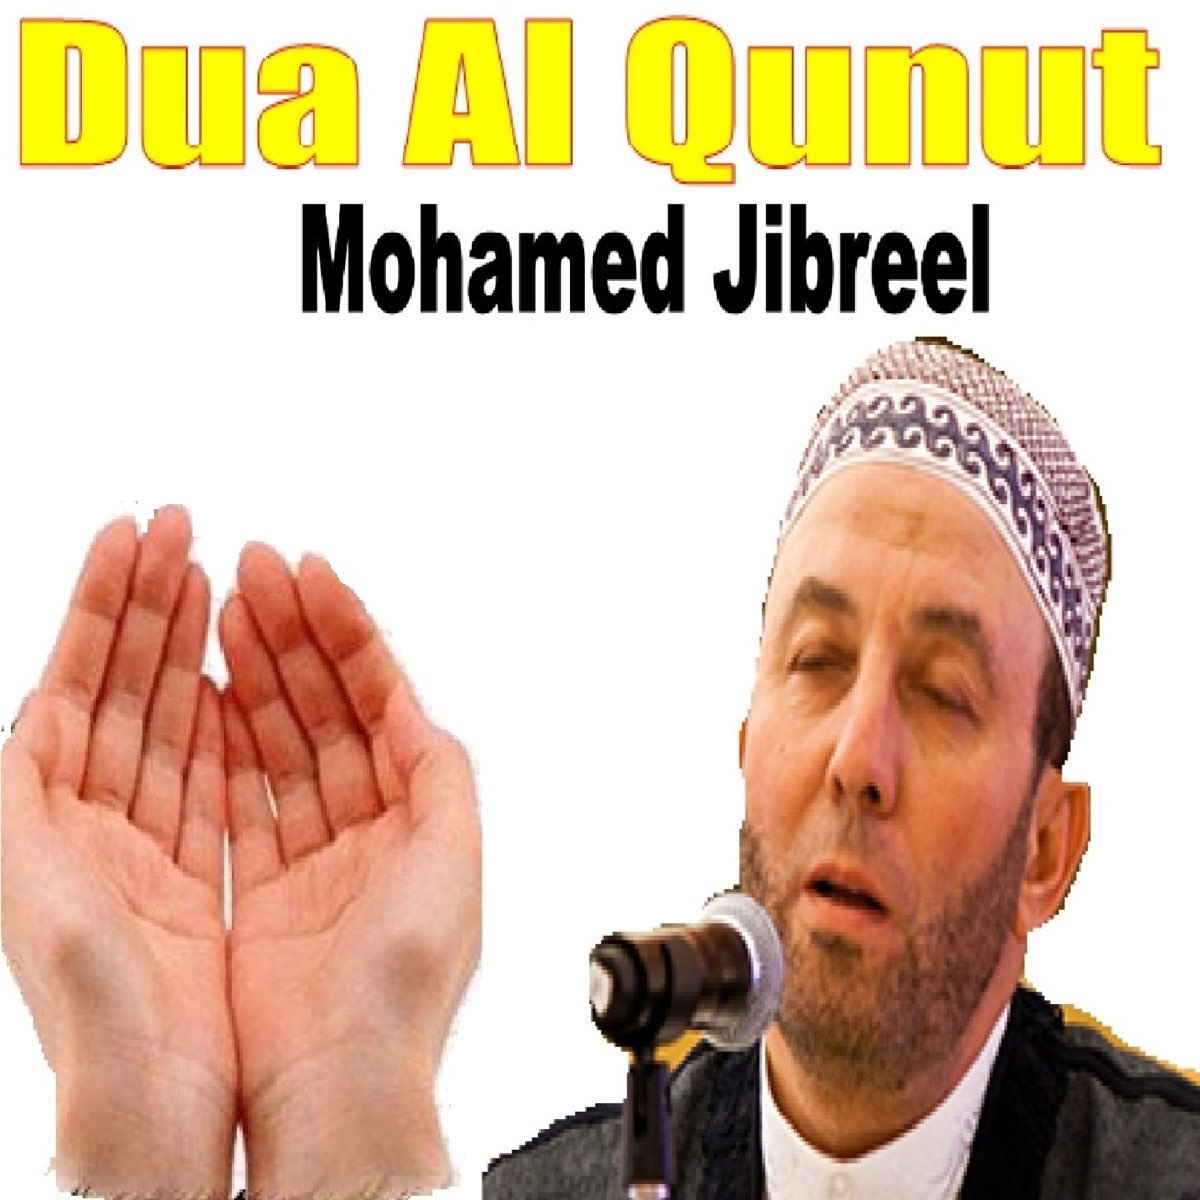 ‎Dua Al Qunut (Quran) by Mohamed Jibreel on Apple Music